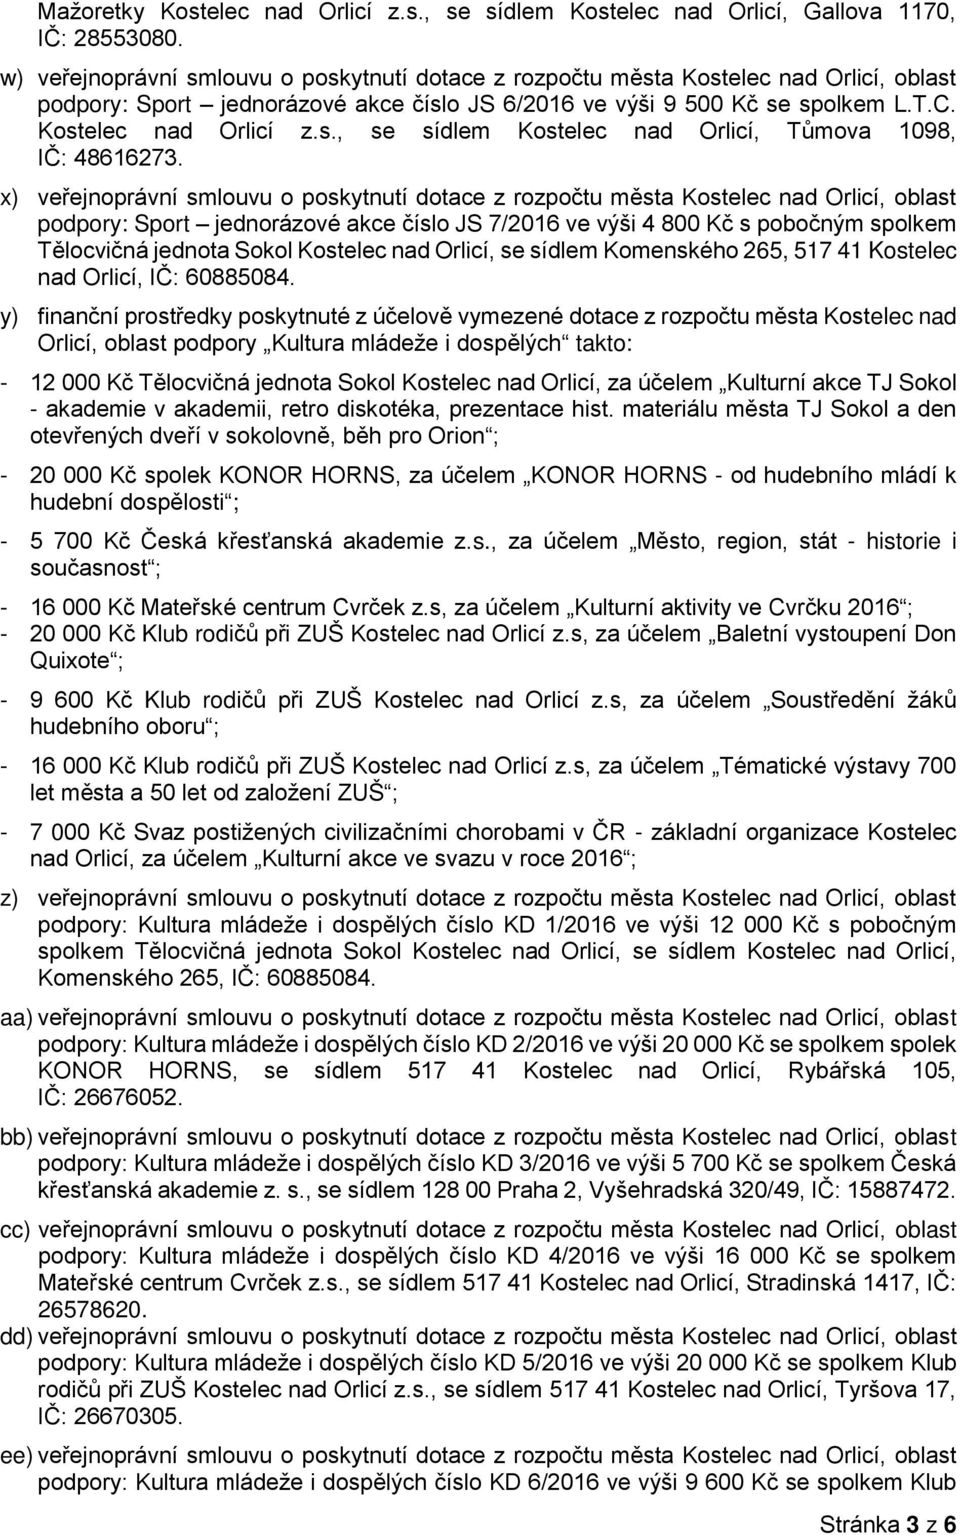 x) veřejnoprávní smlouvu o poskytnutí dotace z rozpočtu města Kostelec nad Orlicí, oblast podpory: Sport jednorázové akce číslo JS 7/2016 ve výši 4 800 Kč s pobočným spolkem Tělocvičná jednota Sokol